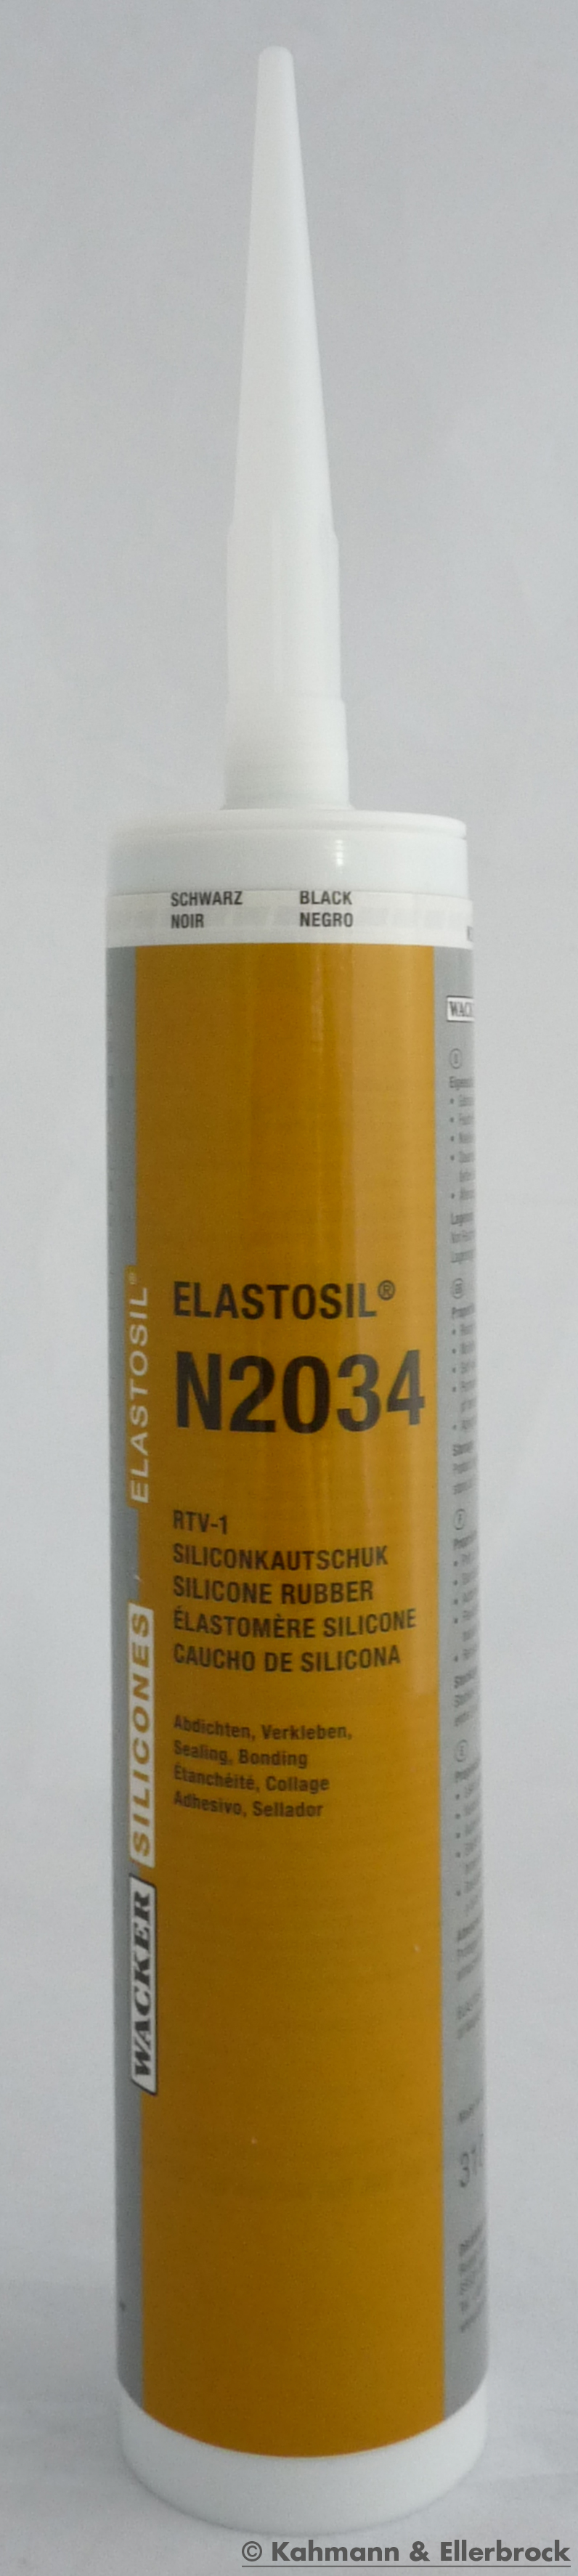 Elastosil N 2034